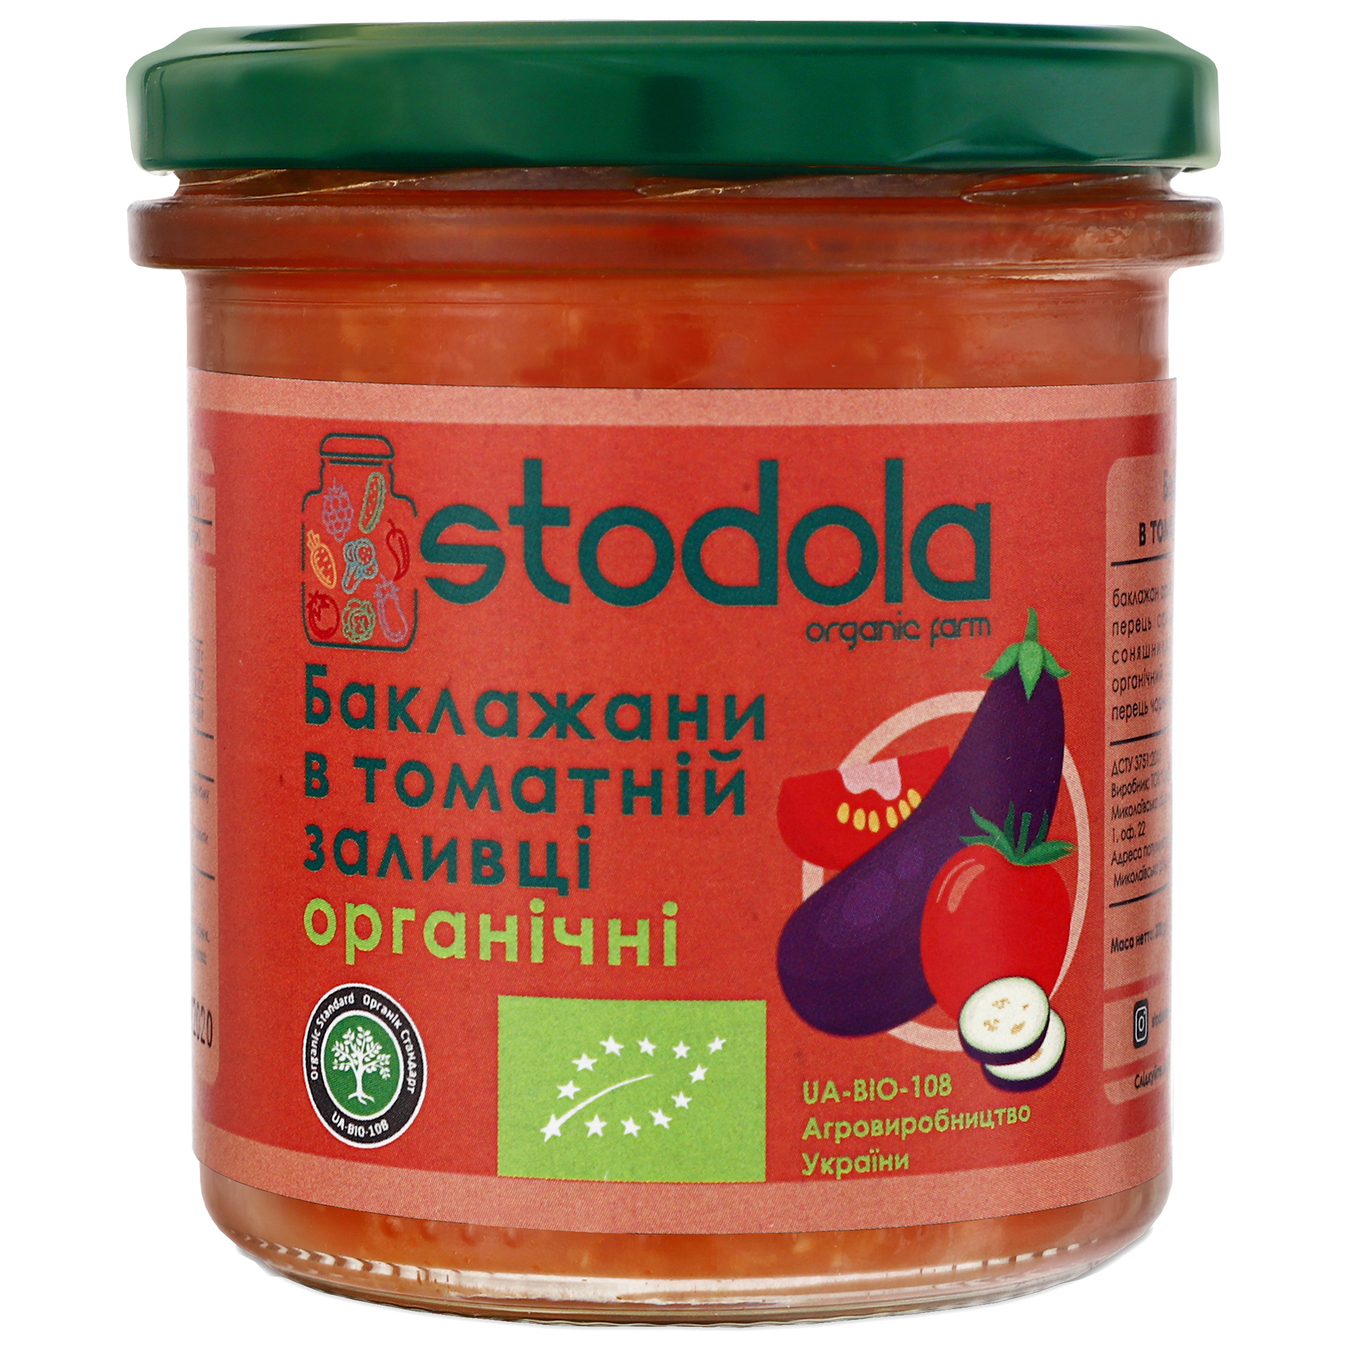 Баклажани Стодола Щира Їжа в томаті органічні 300г